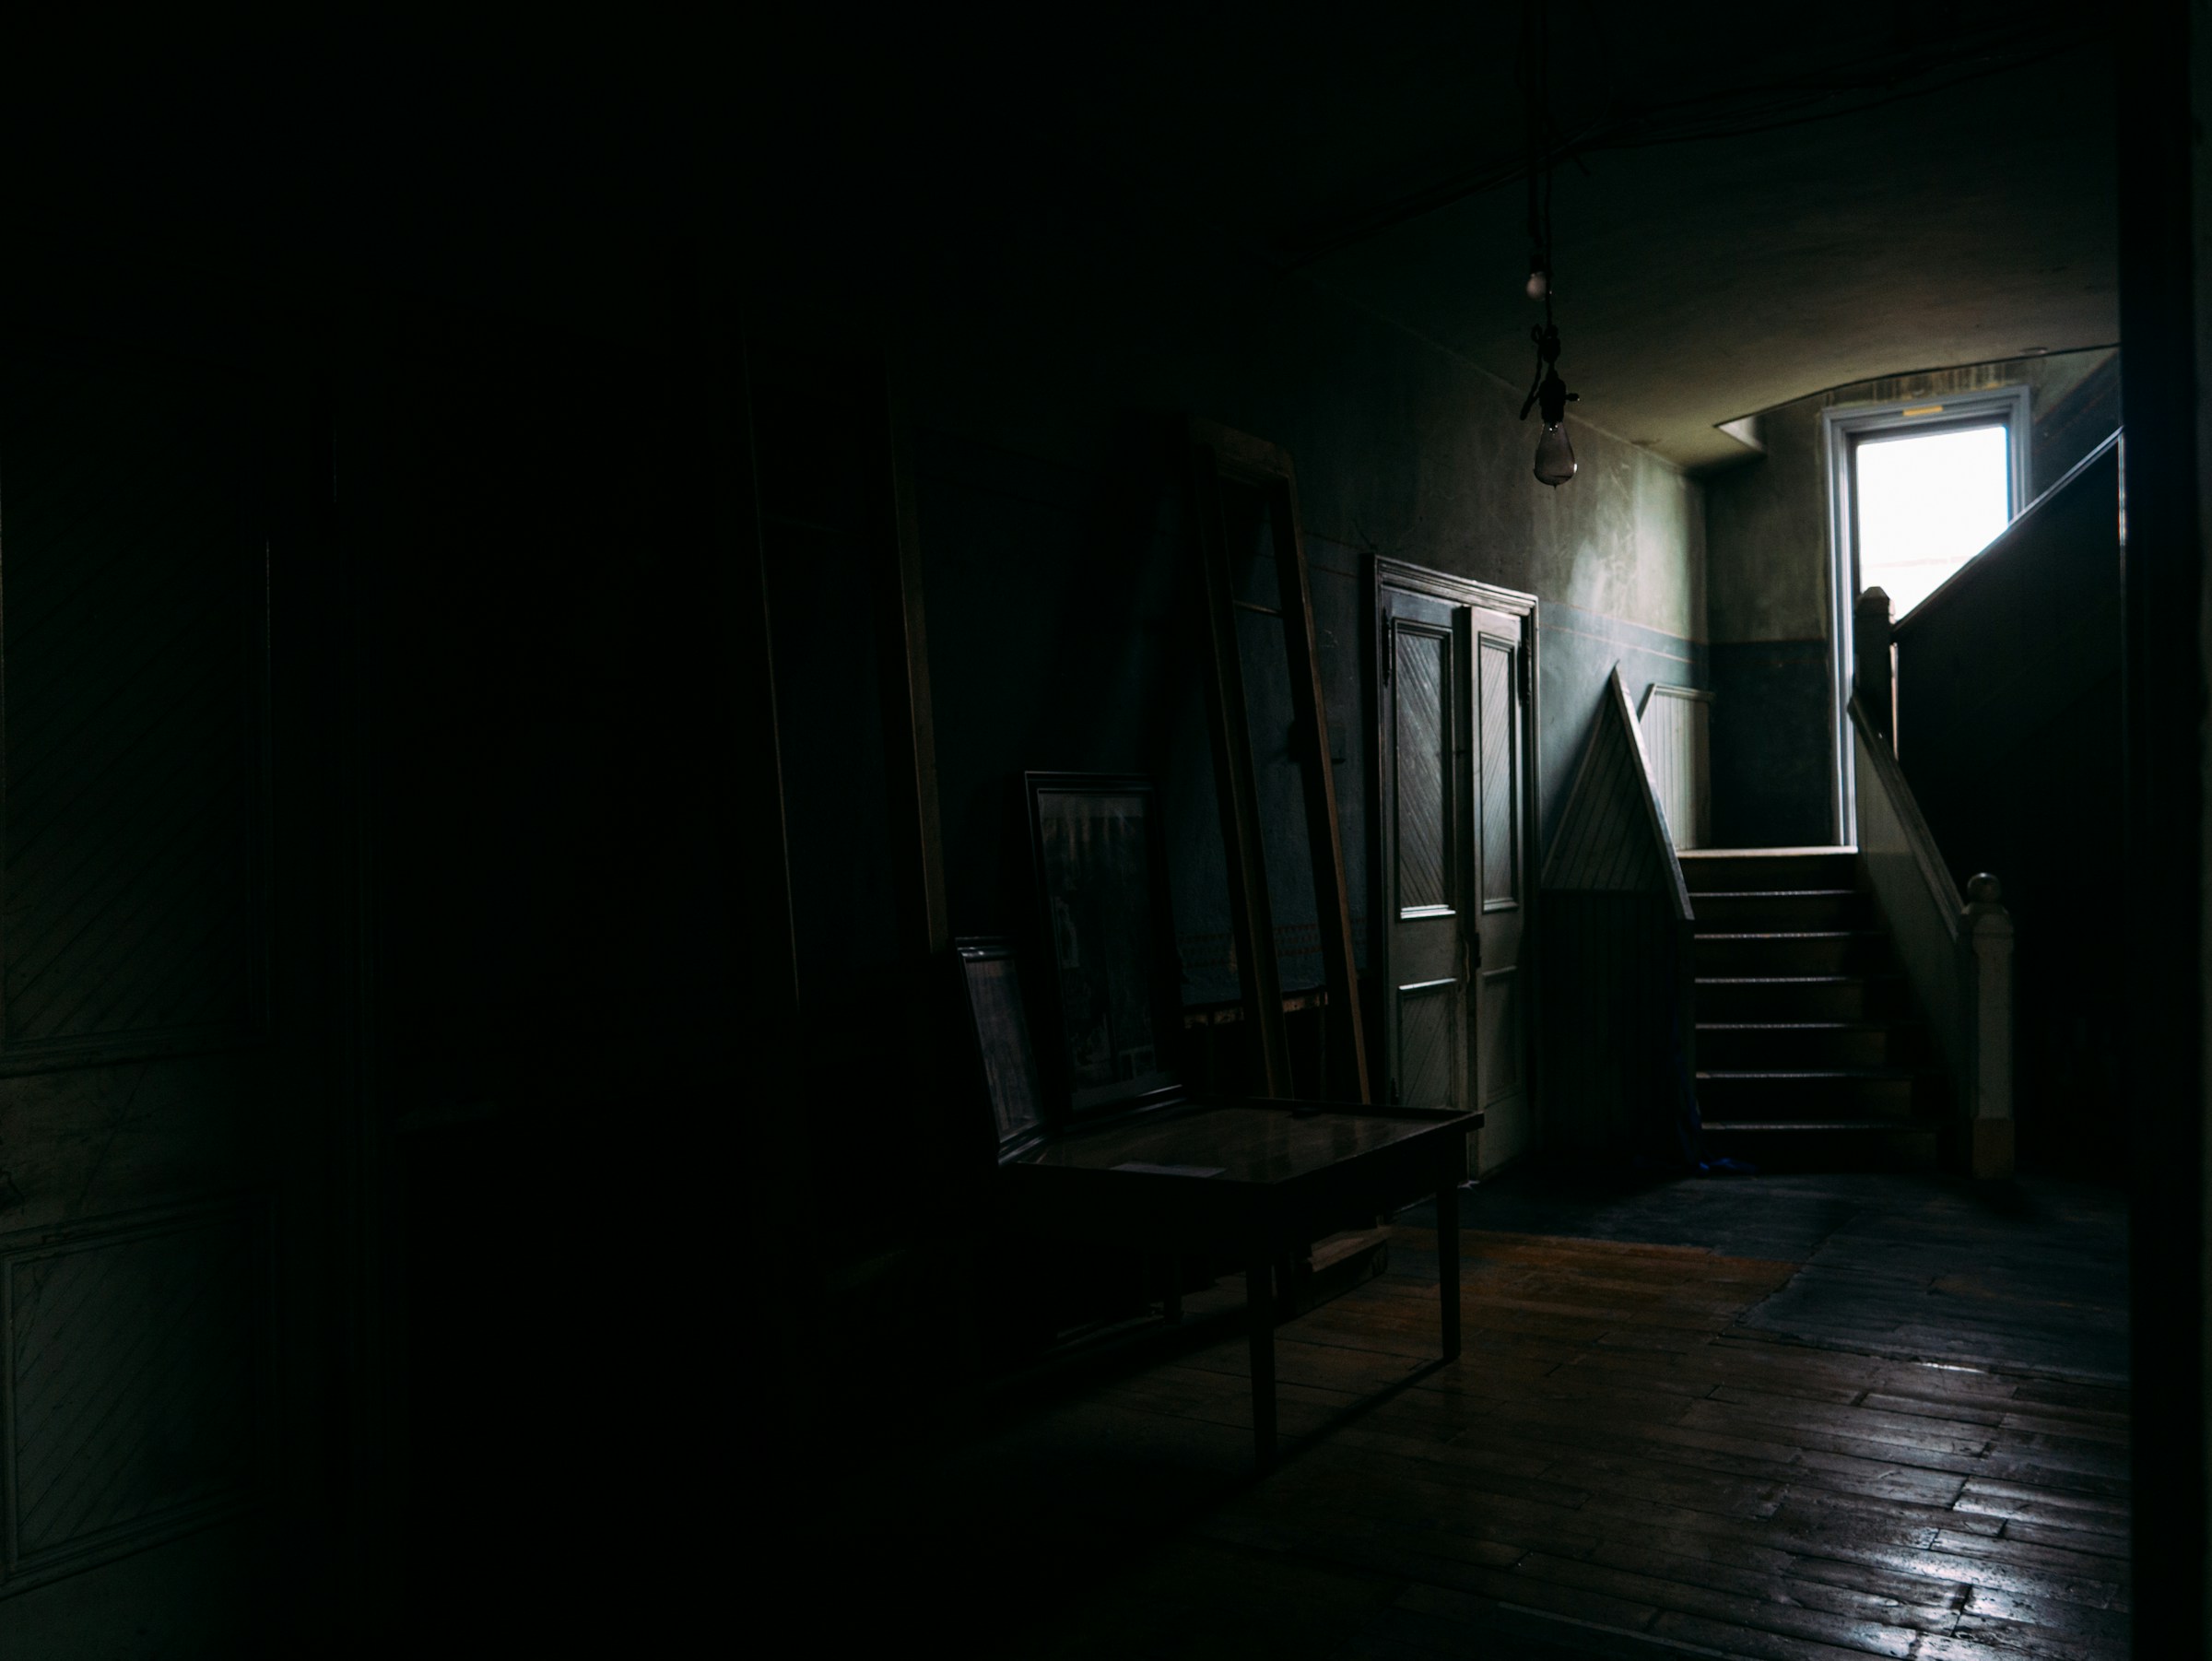 Una casa sin luz | Fuente: Unsplash